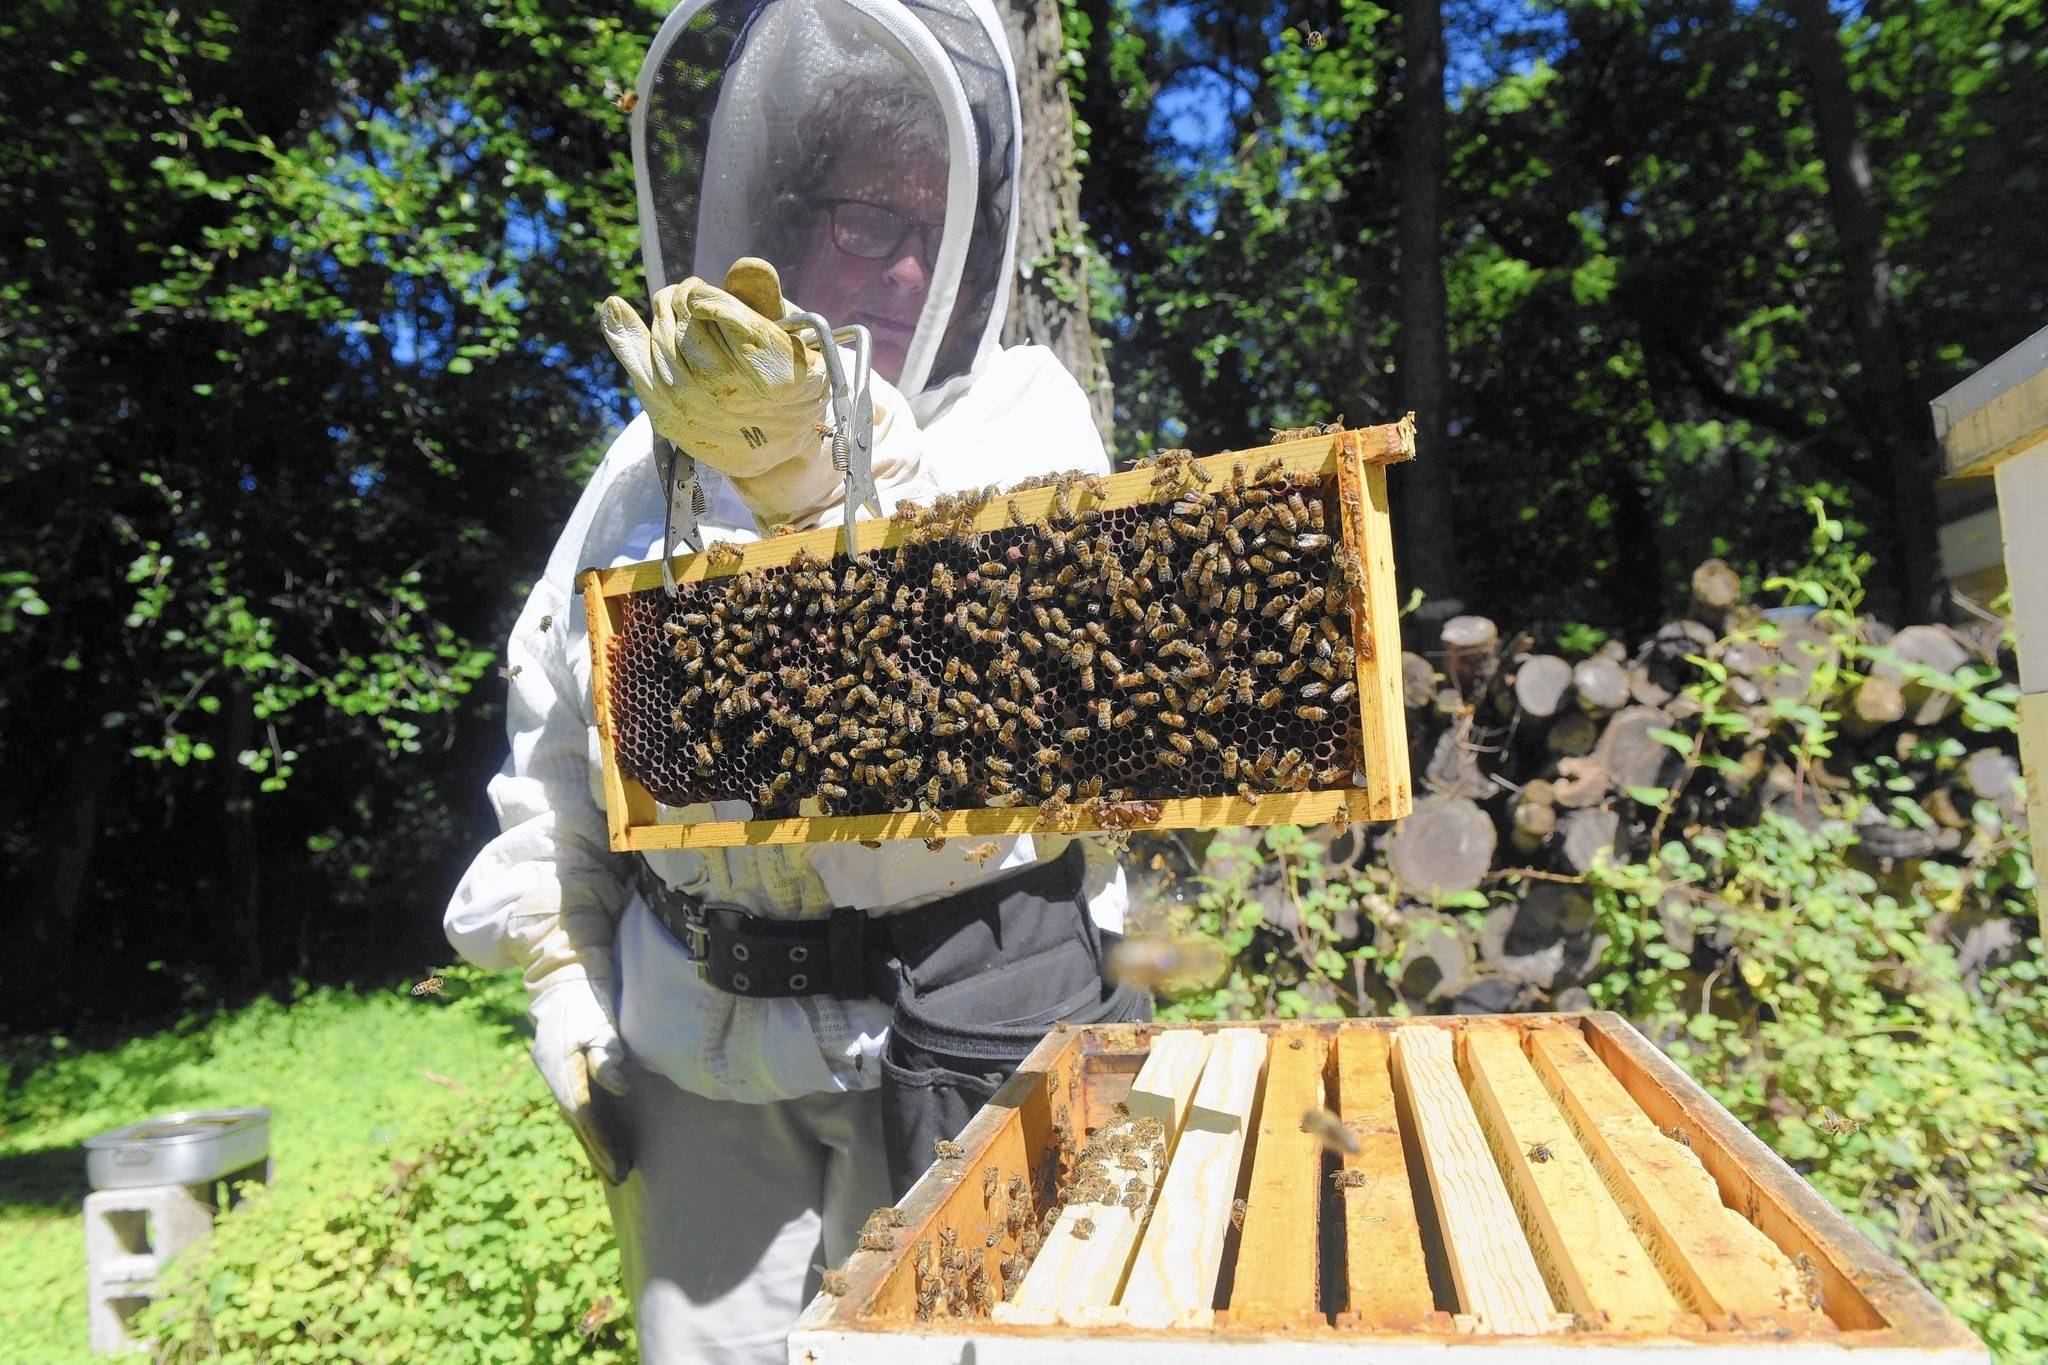 Разведение пчел для начинающих: c чего лучше начать, фото и видео